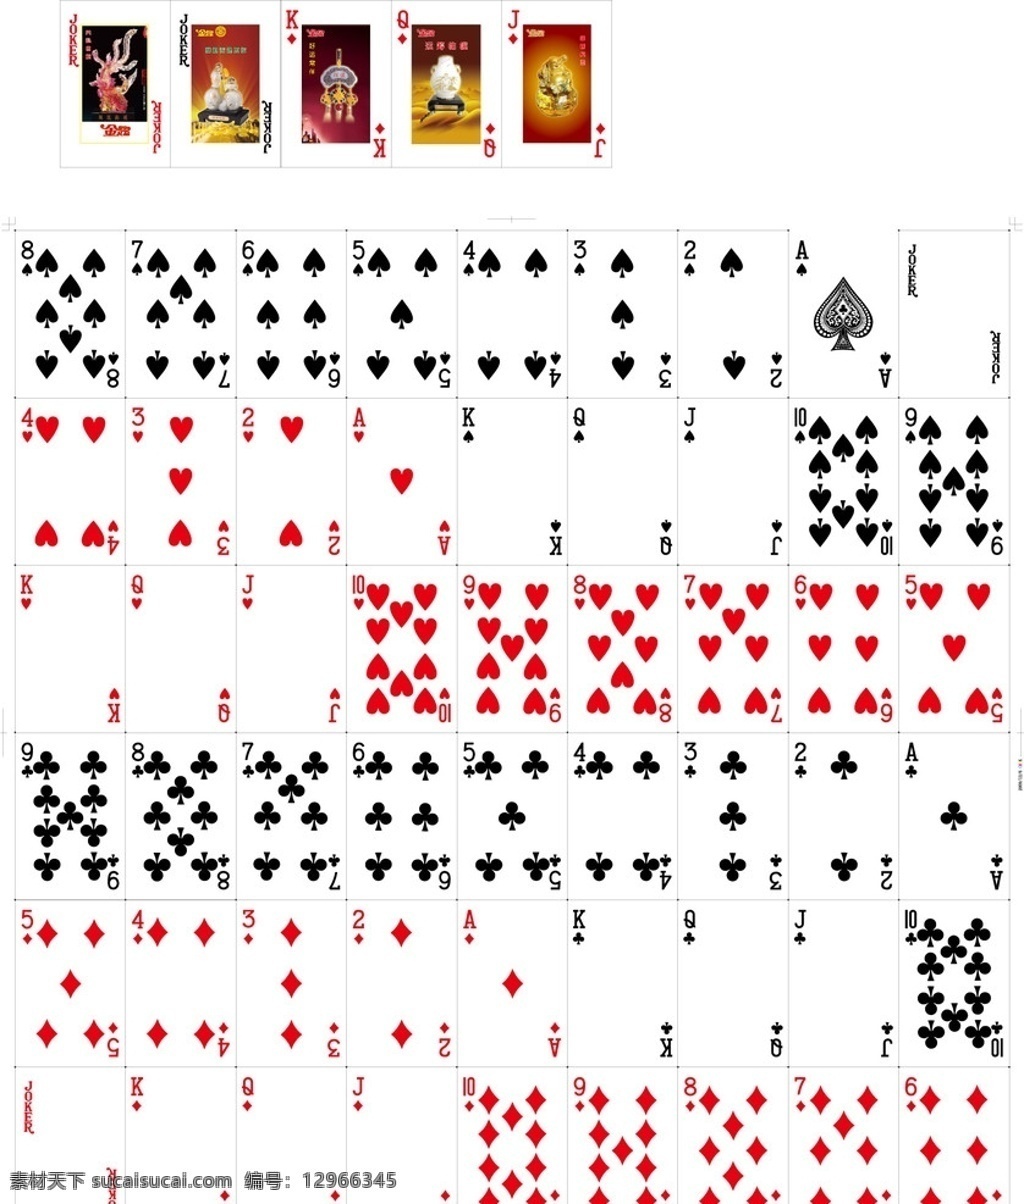 金得宝扑克牌 背景图 凤凰卫视 制定 图 玉葫芦 玉花瓶 挂件 如来佛 扑克牌 包装设计 矢量